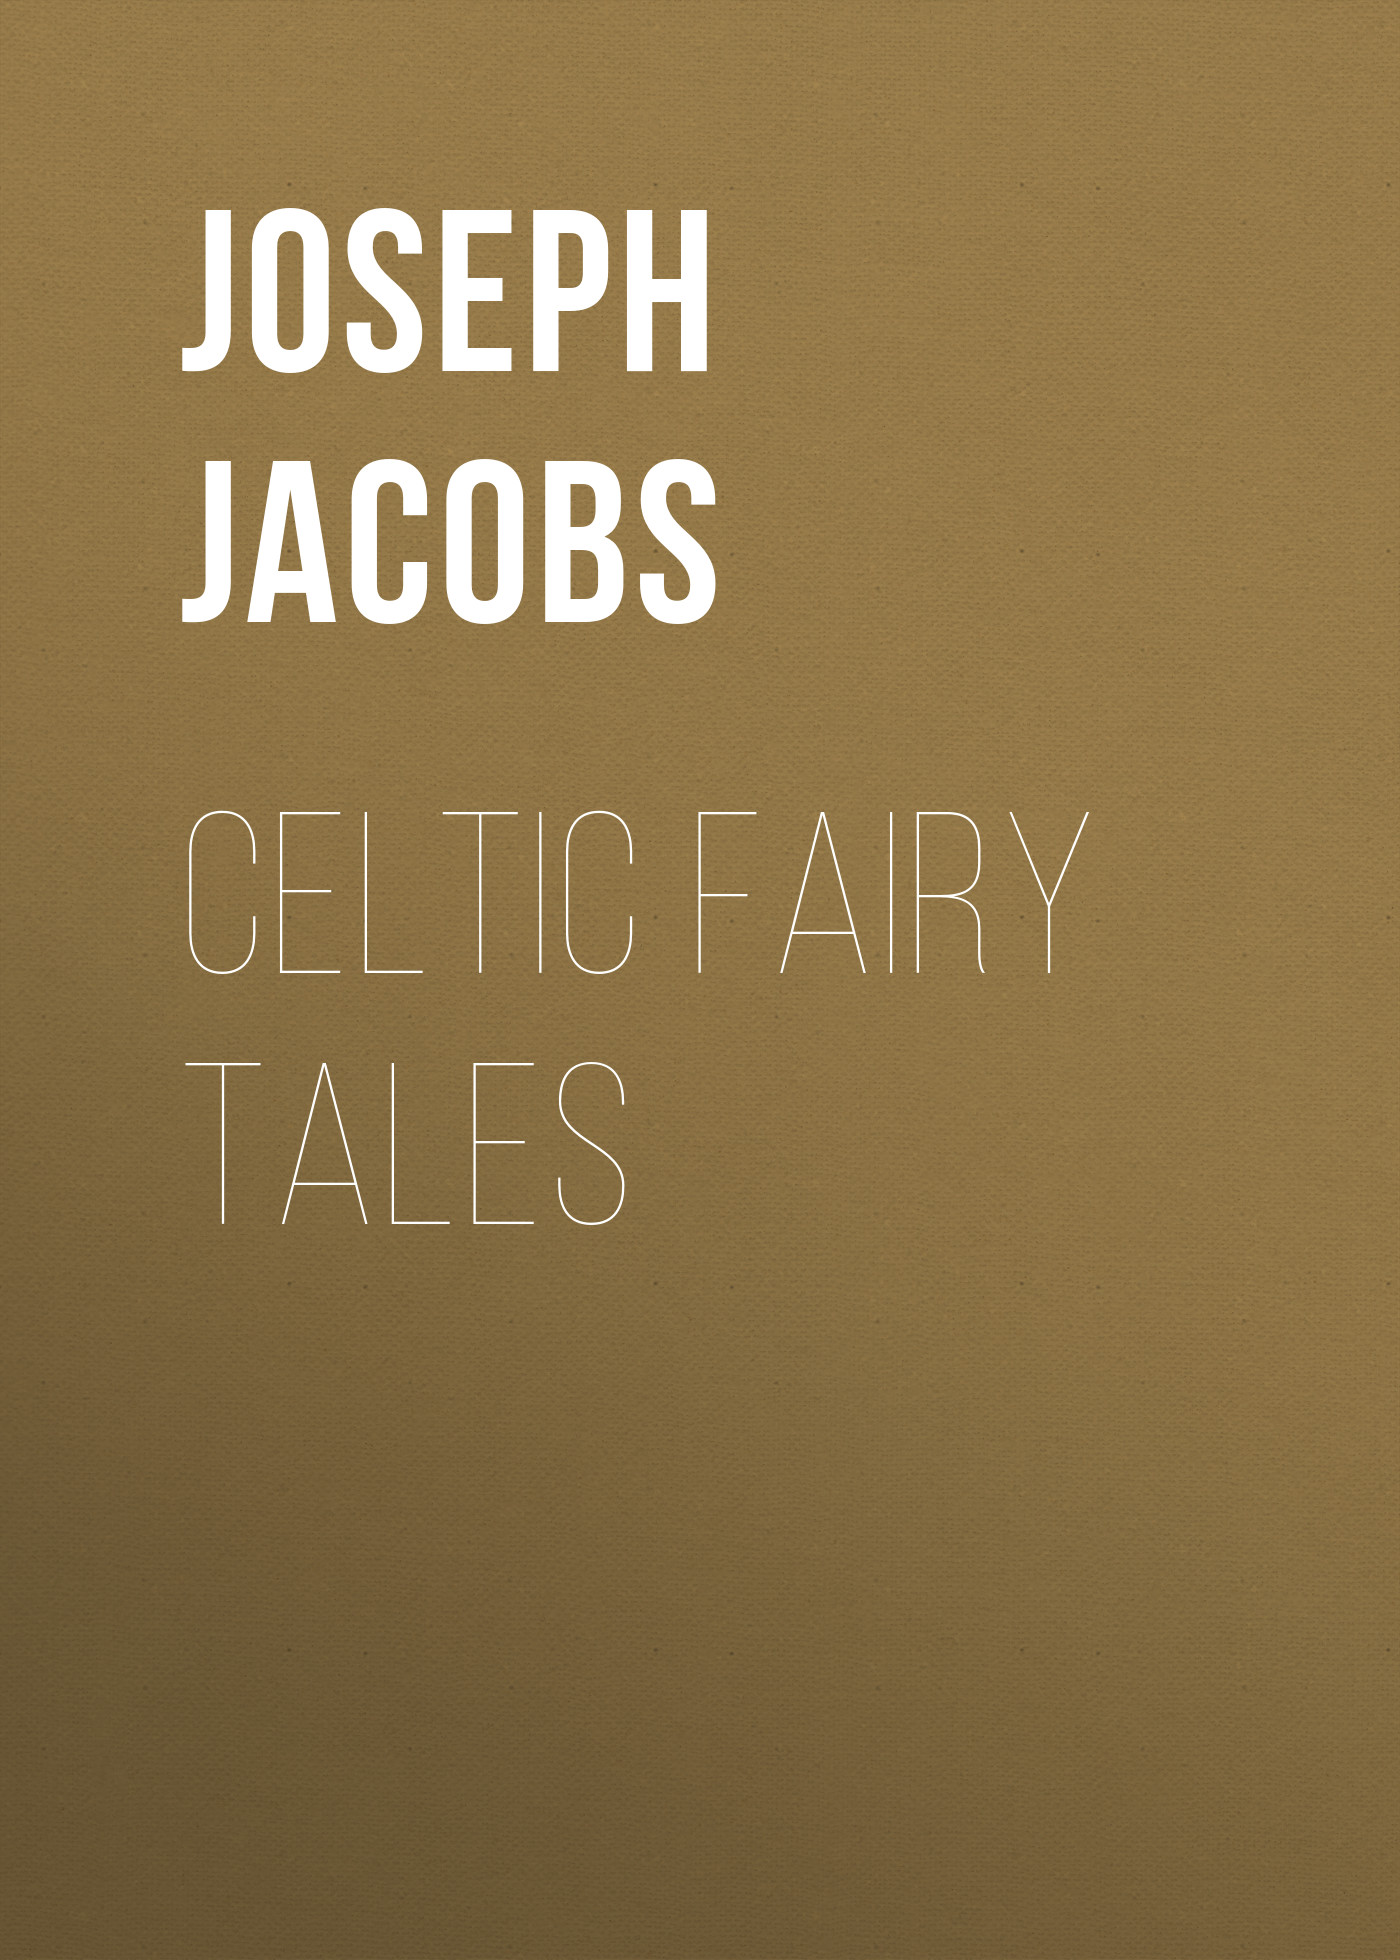 Книга Celtic Fairy Tales из серии , созданная Joseph Jacobs, может относится к жанру Сказки, Старинная литература: прочее, Зарубежная старинная литература, Зарубежная классика, Зарубежные детские книги. Стоимость электронной книги Celtic Fairy Tales с идентификатором 36323116 составляет 0 руб.